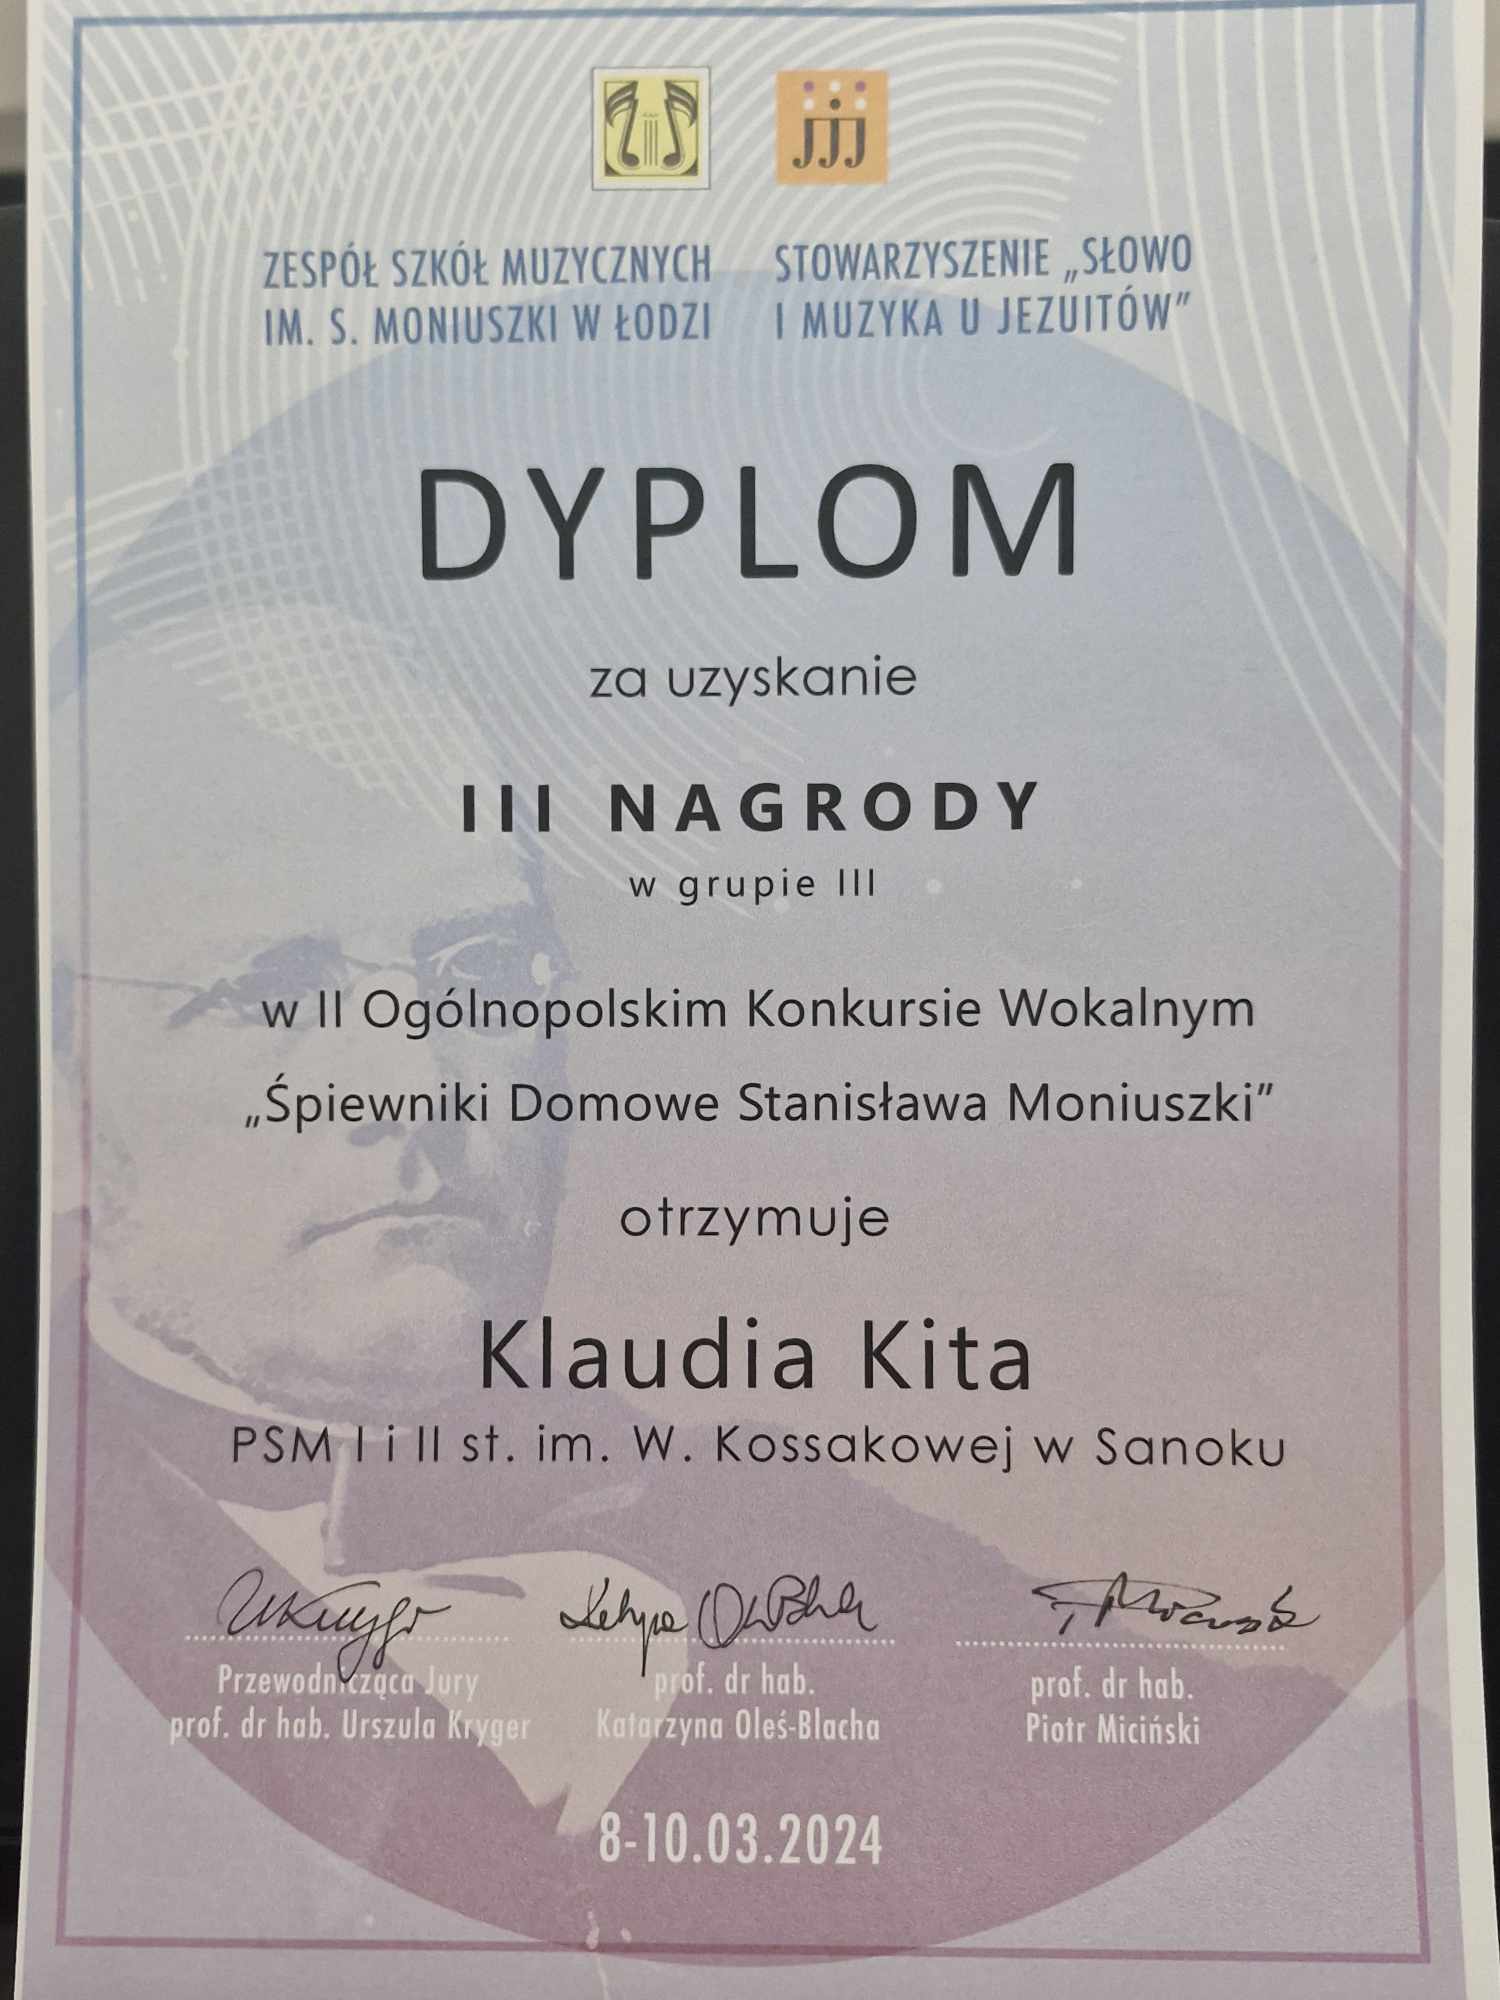 Dyplom - Klaudia Kita - Ogólnopolski Konkurs Wokalny. Szare tło, Stanisław Moniuszko, czarne litery